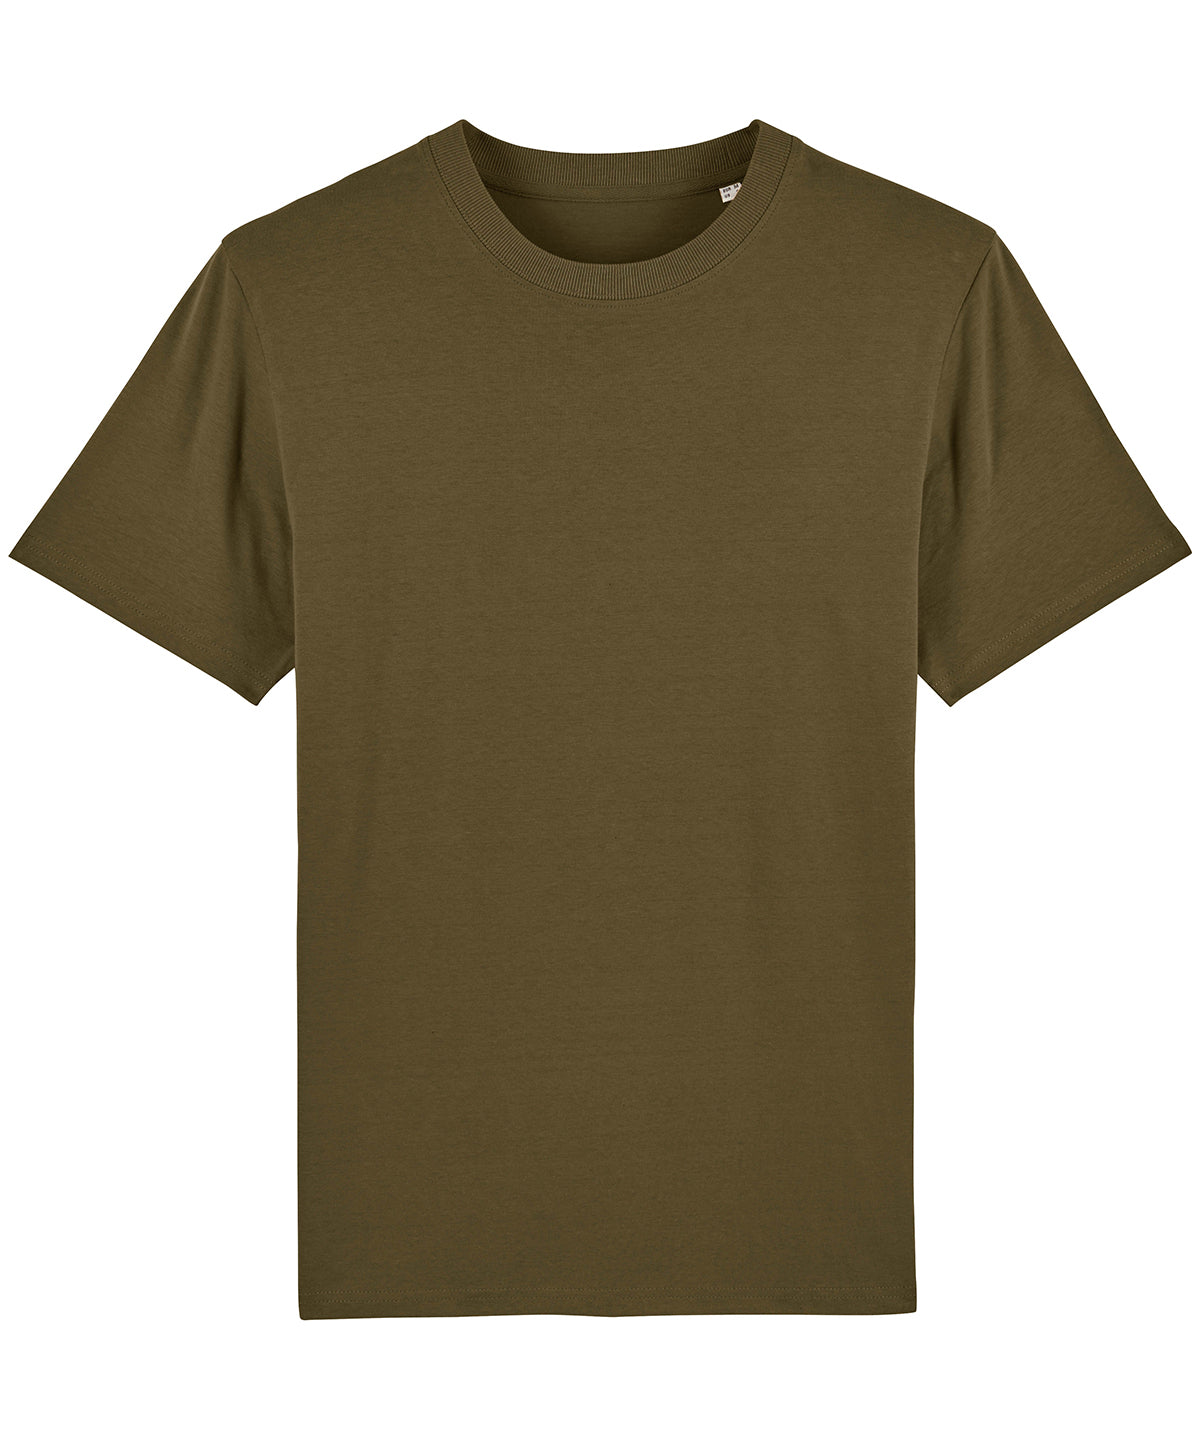 Stuttermabolir - Sparker, Unisex Heavy T-shirt (STTM559)